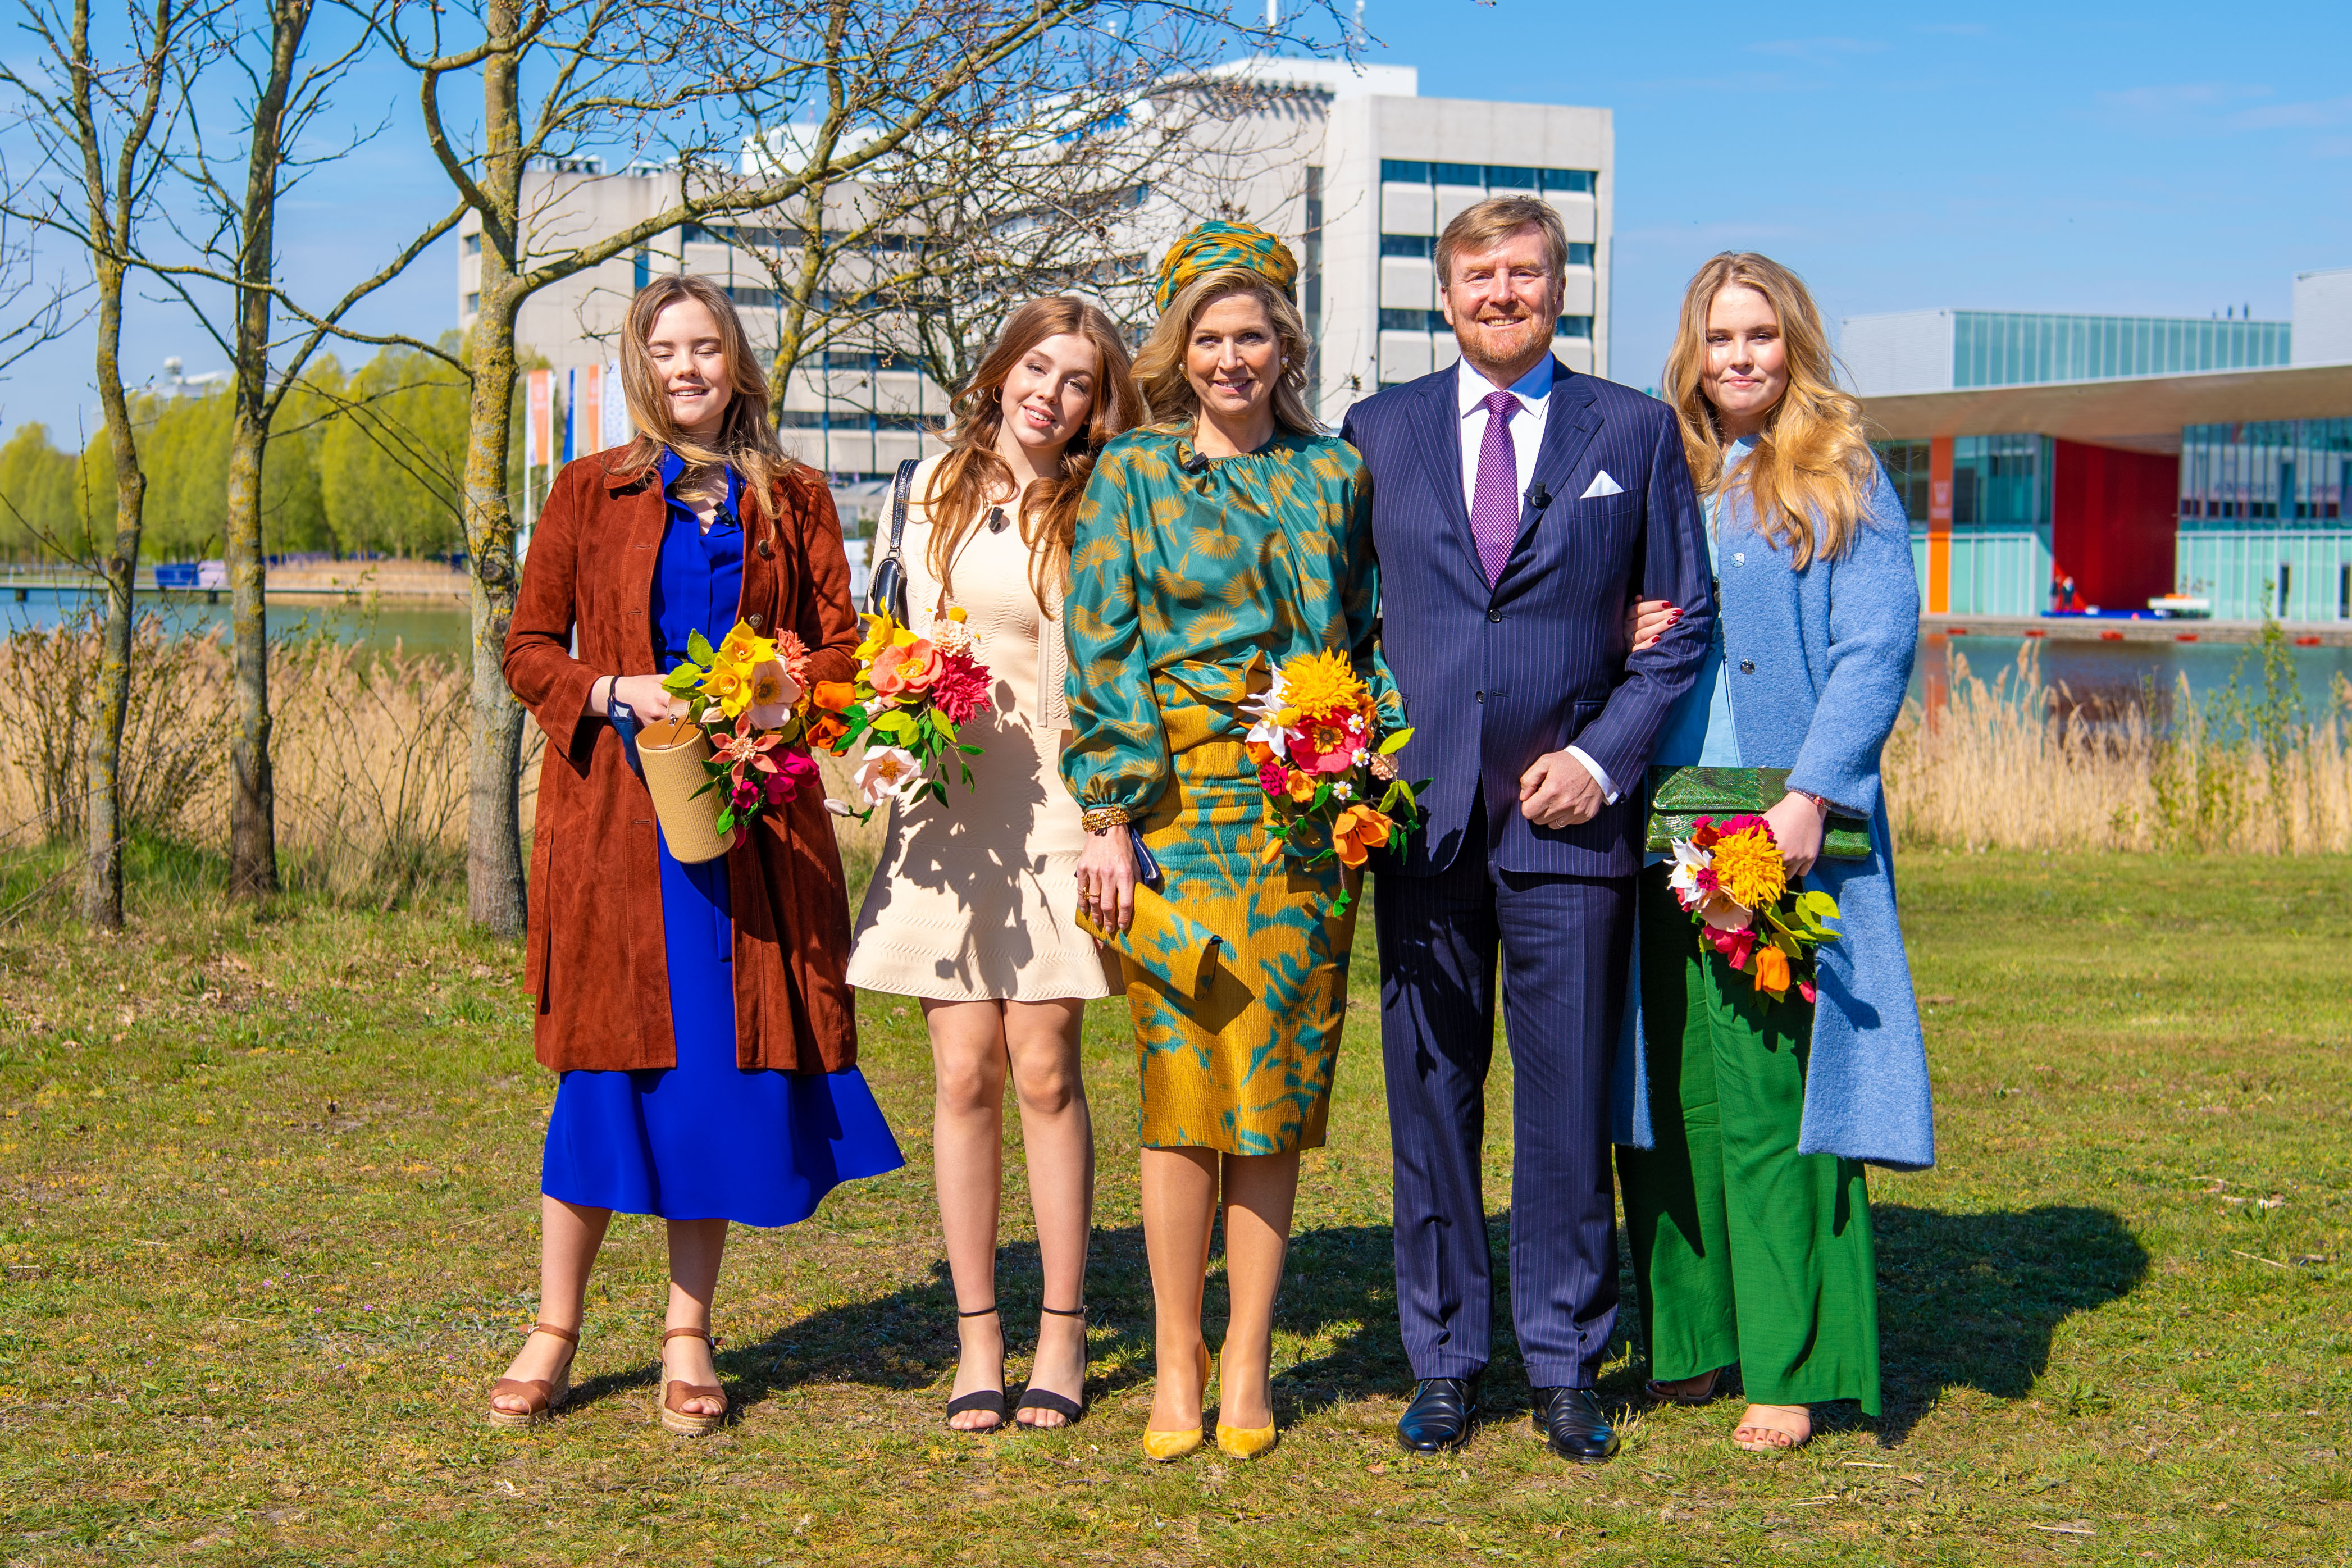 La familia real de los Países Bajos durante la celebración del día del rey. Guillermo de Orange, Máxima Zorreguieta y sus hijas Amalia (18), Alexia (16) y Ariane (14)(Dutch Press/The Grosby Group)

